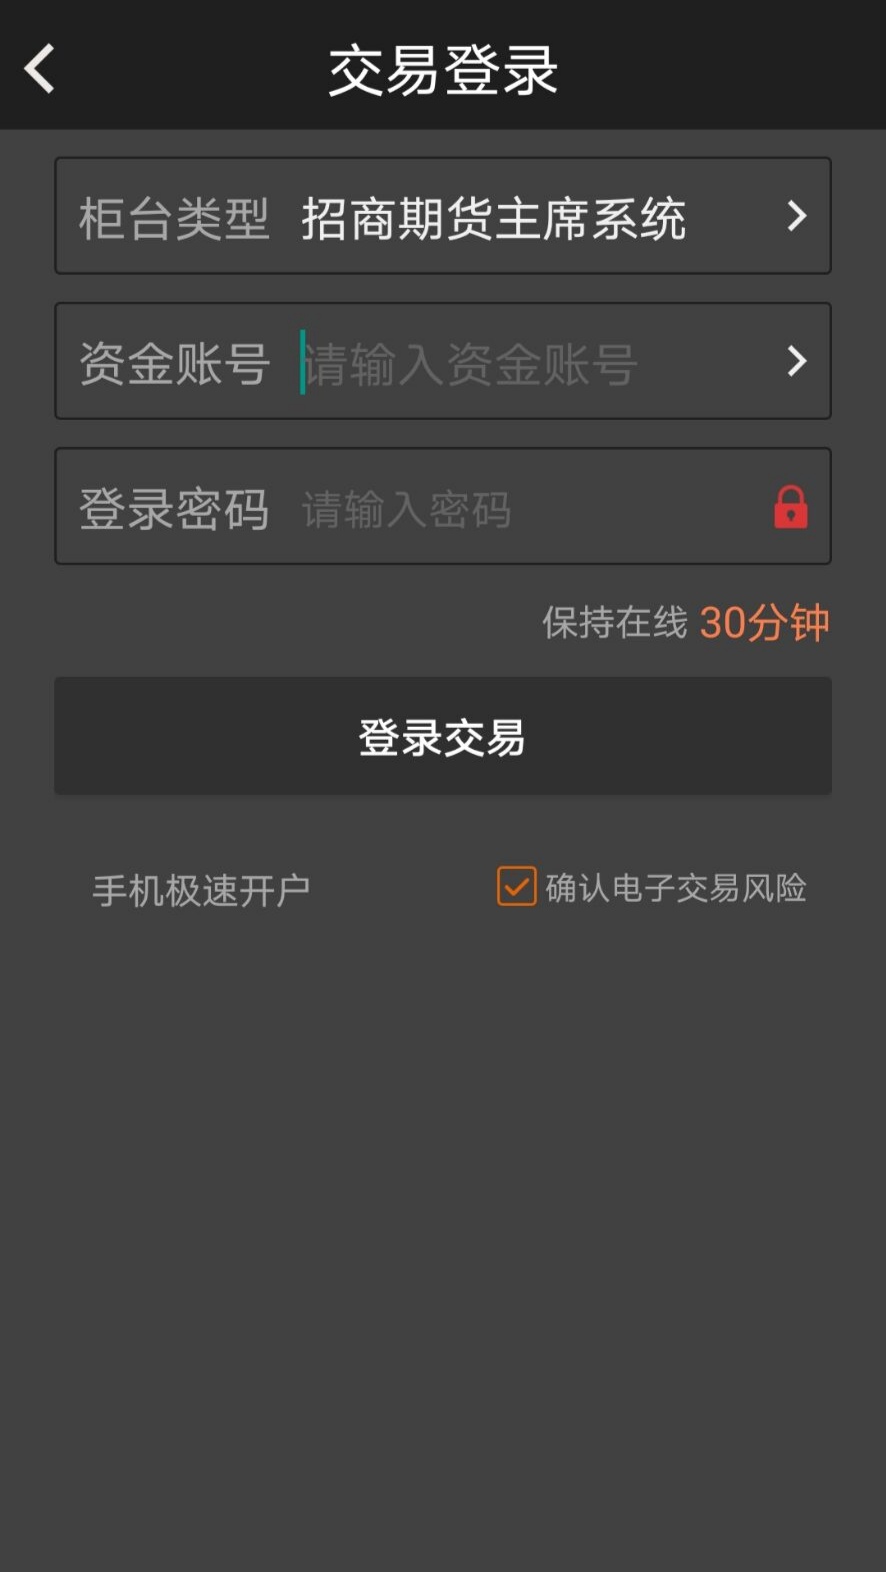 招商期货App下载6.4.8.9